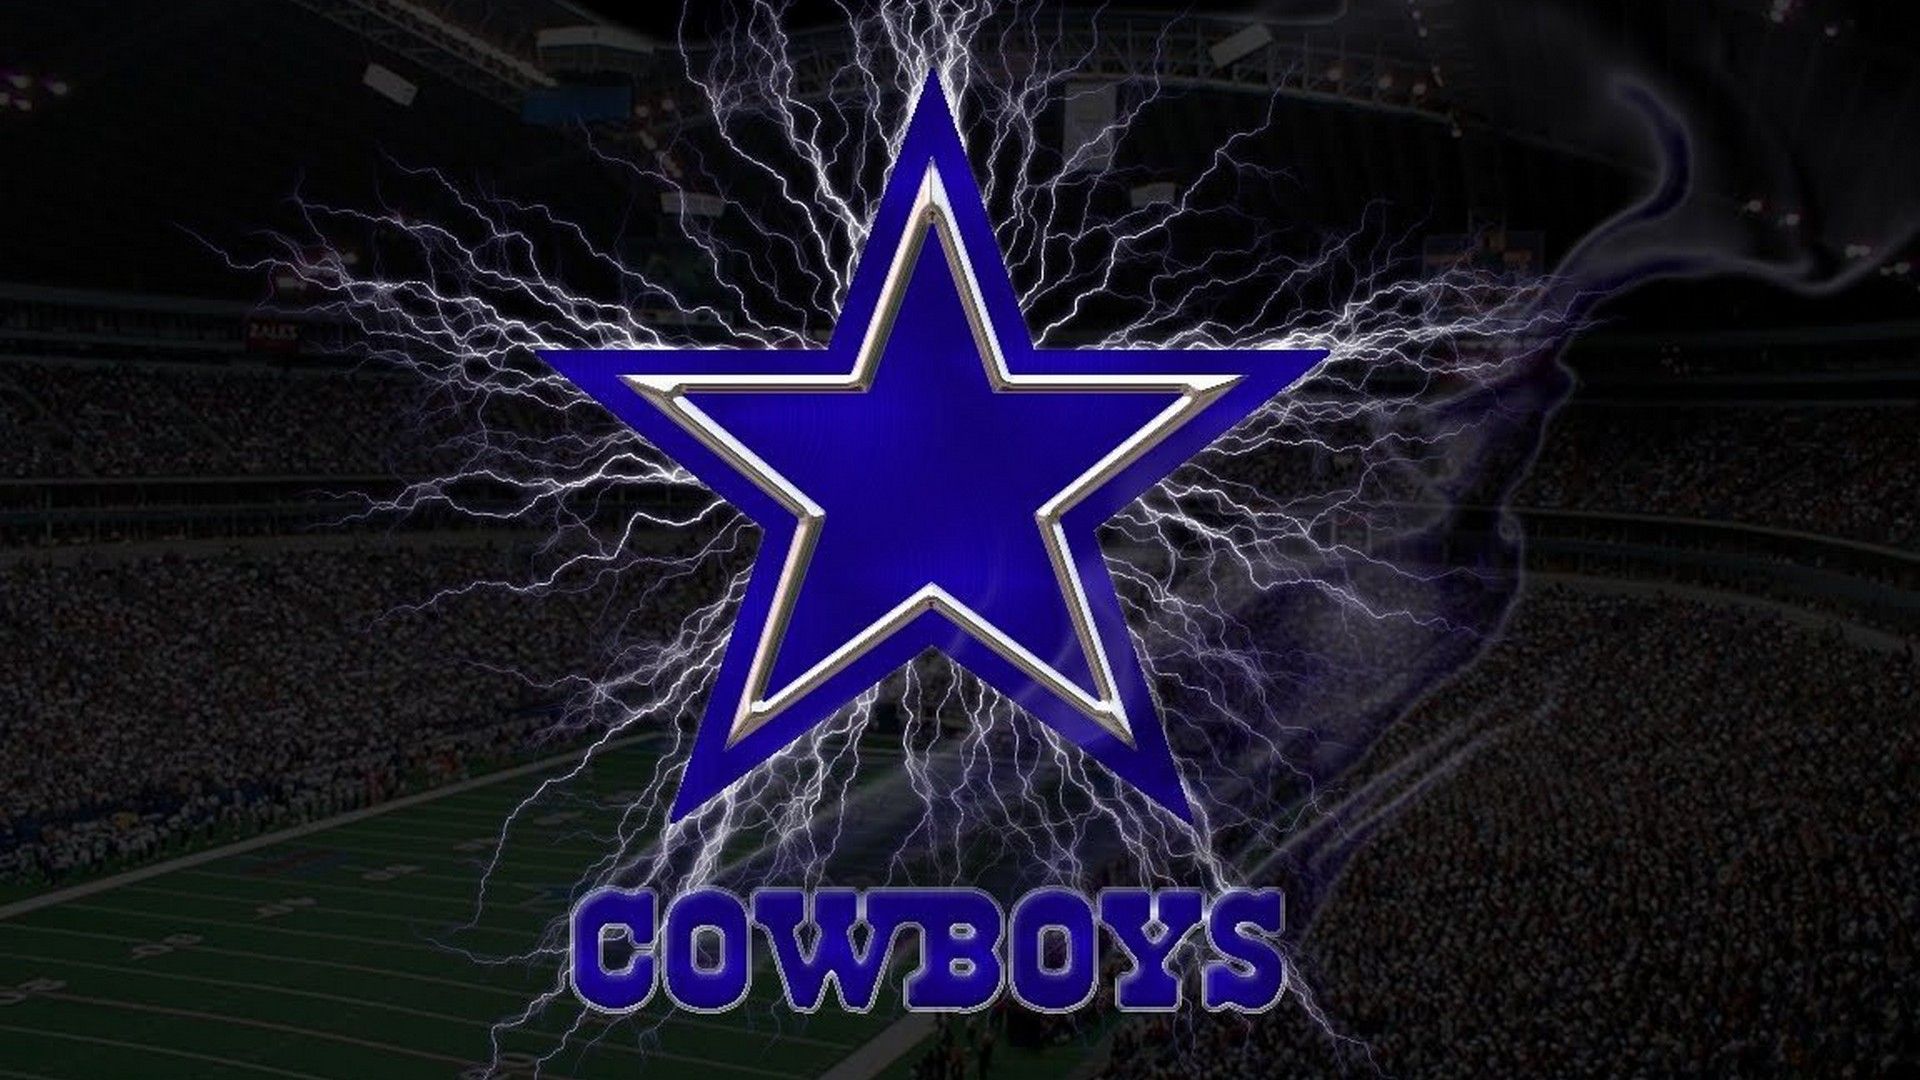 HD Dallas Cowboys Wallpaper NFL Football Wallpaper